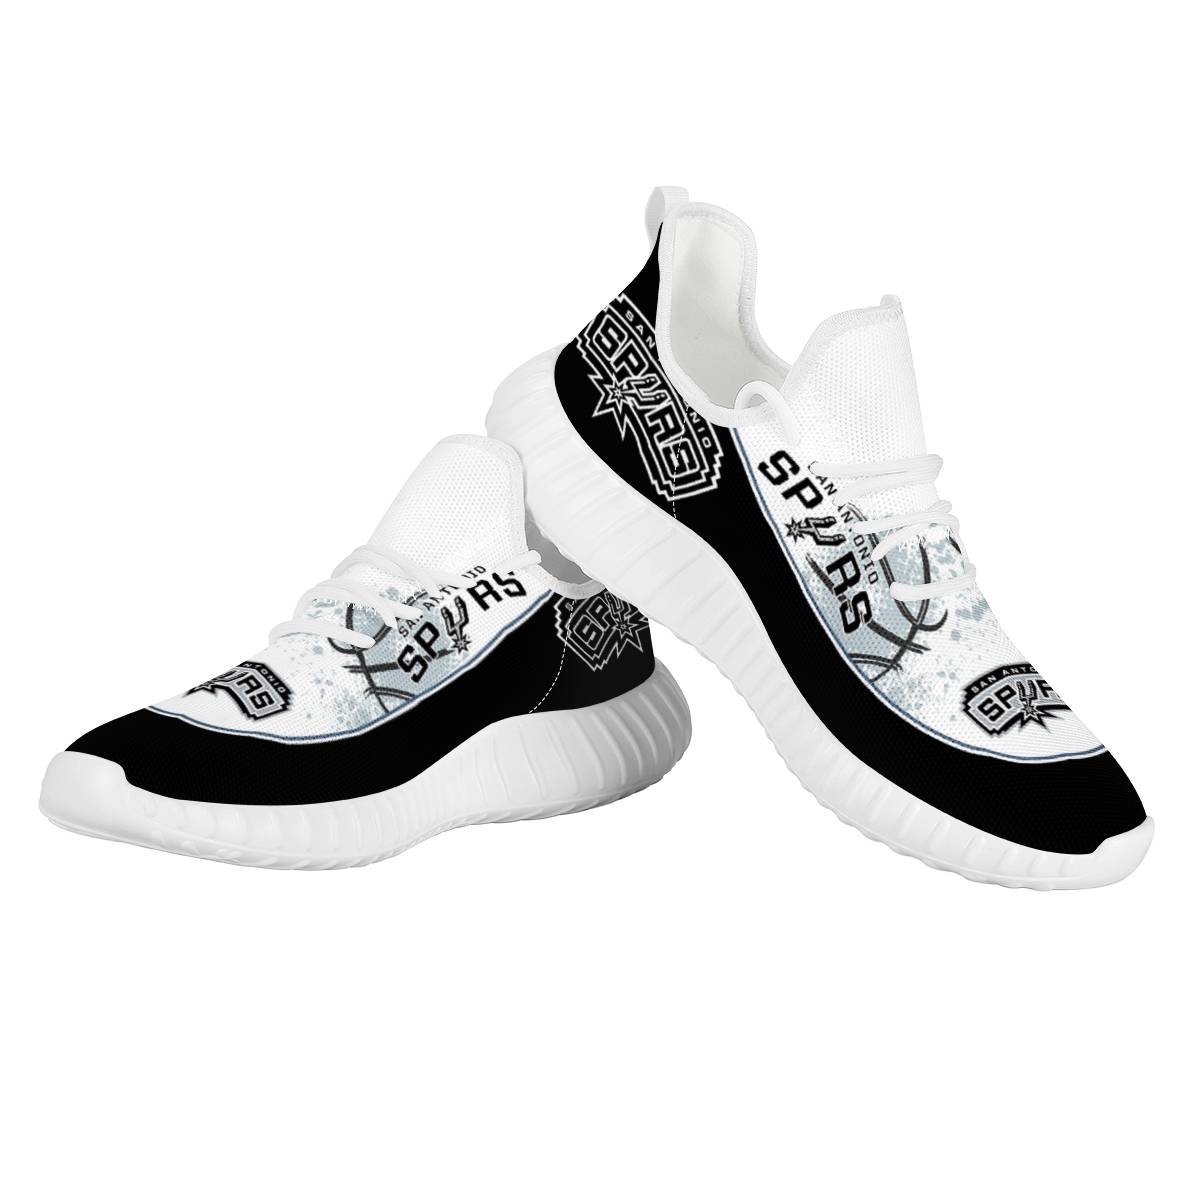 Men's San Antonio Spurs Mesh Knit Sneakers/Shoes 001